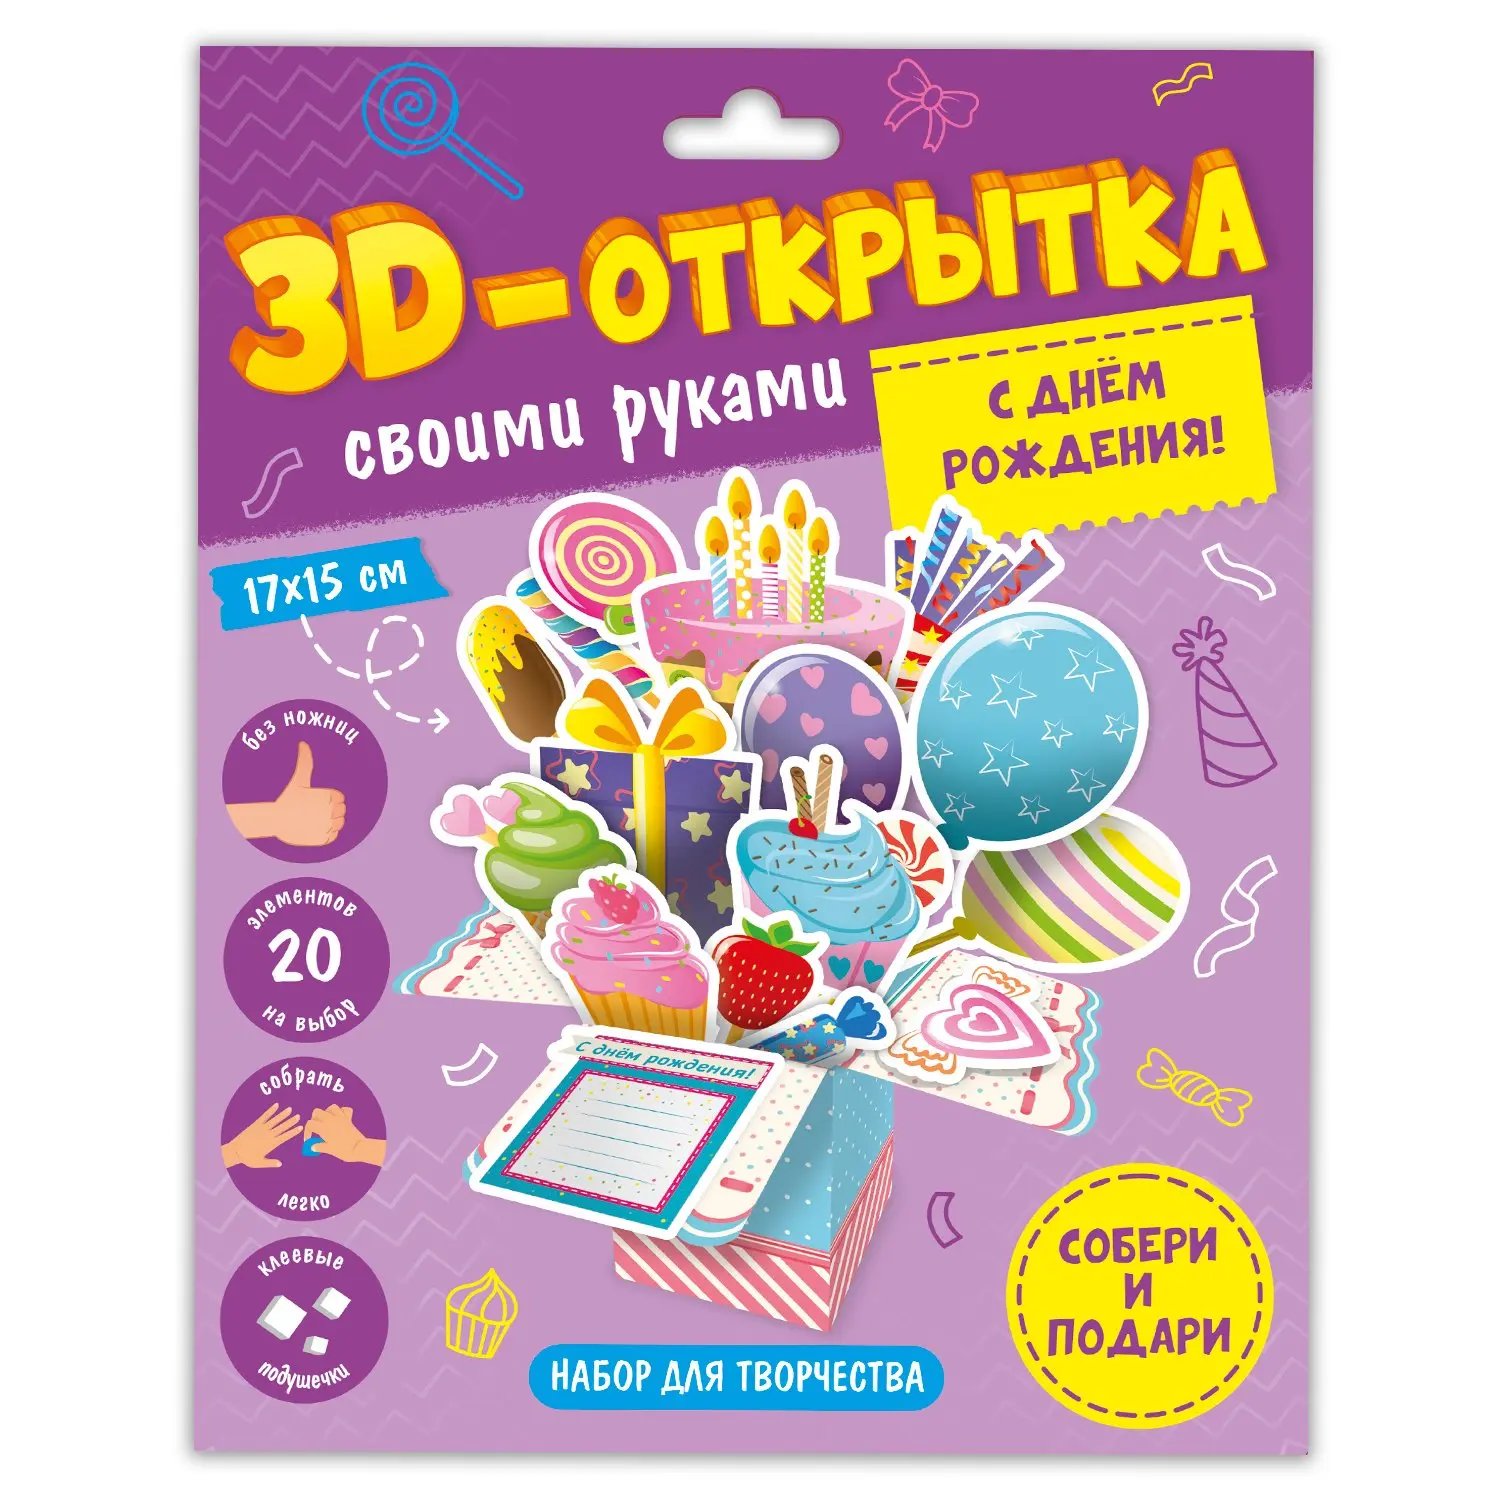 Бумажное творчество 3D-открытка "С днем рождения!" - фото